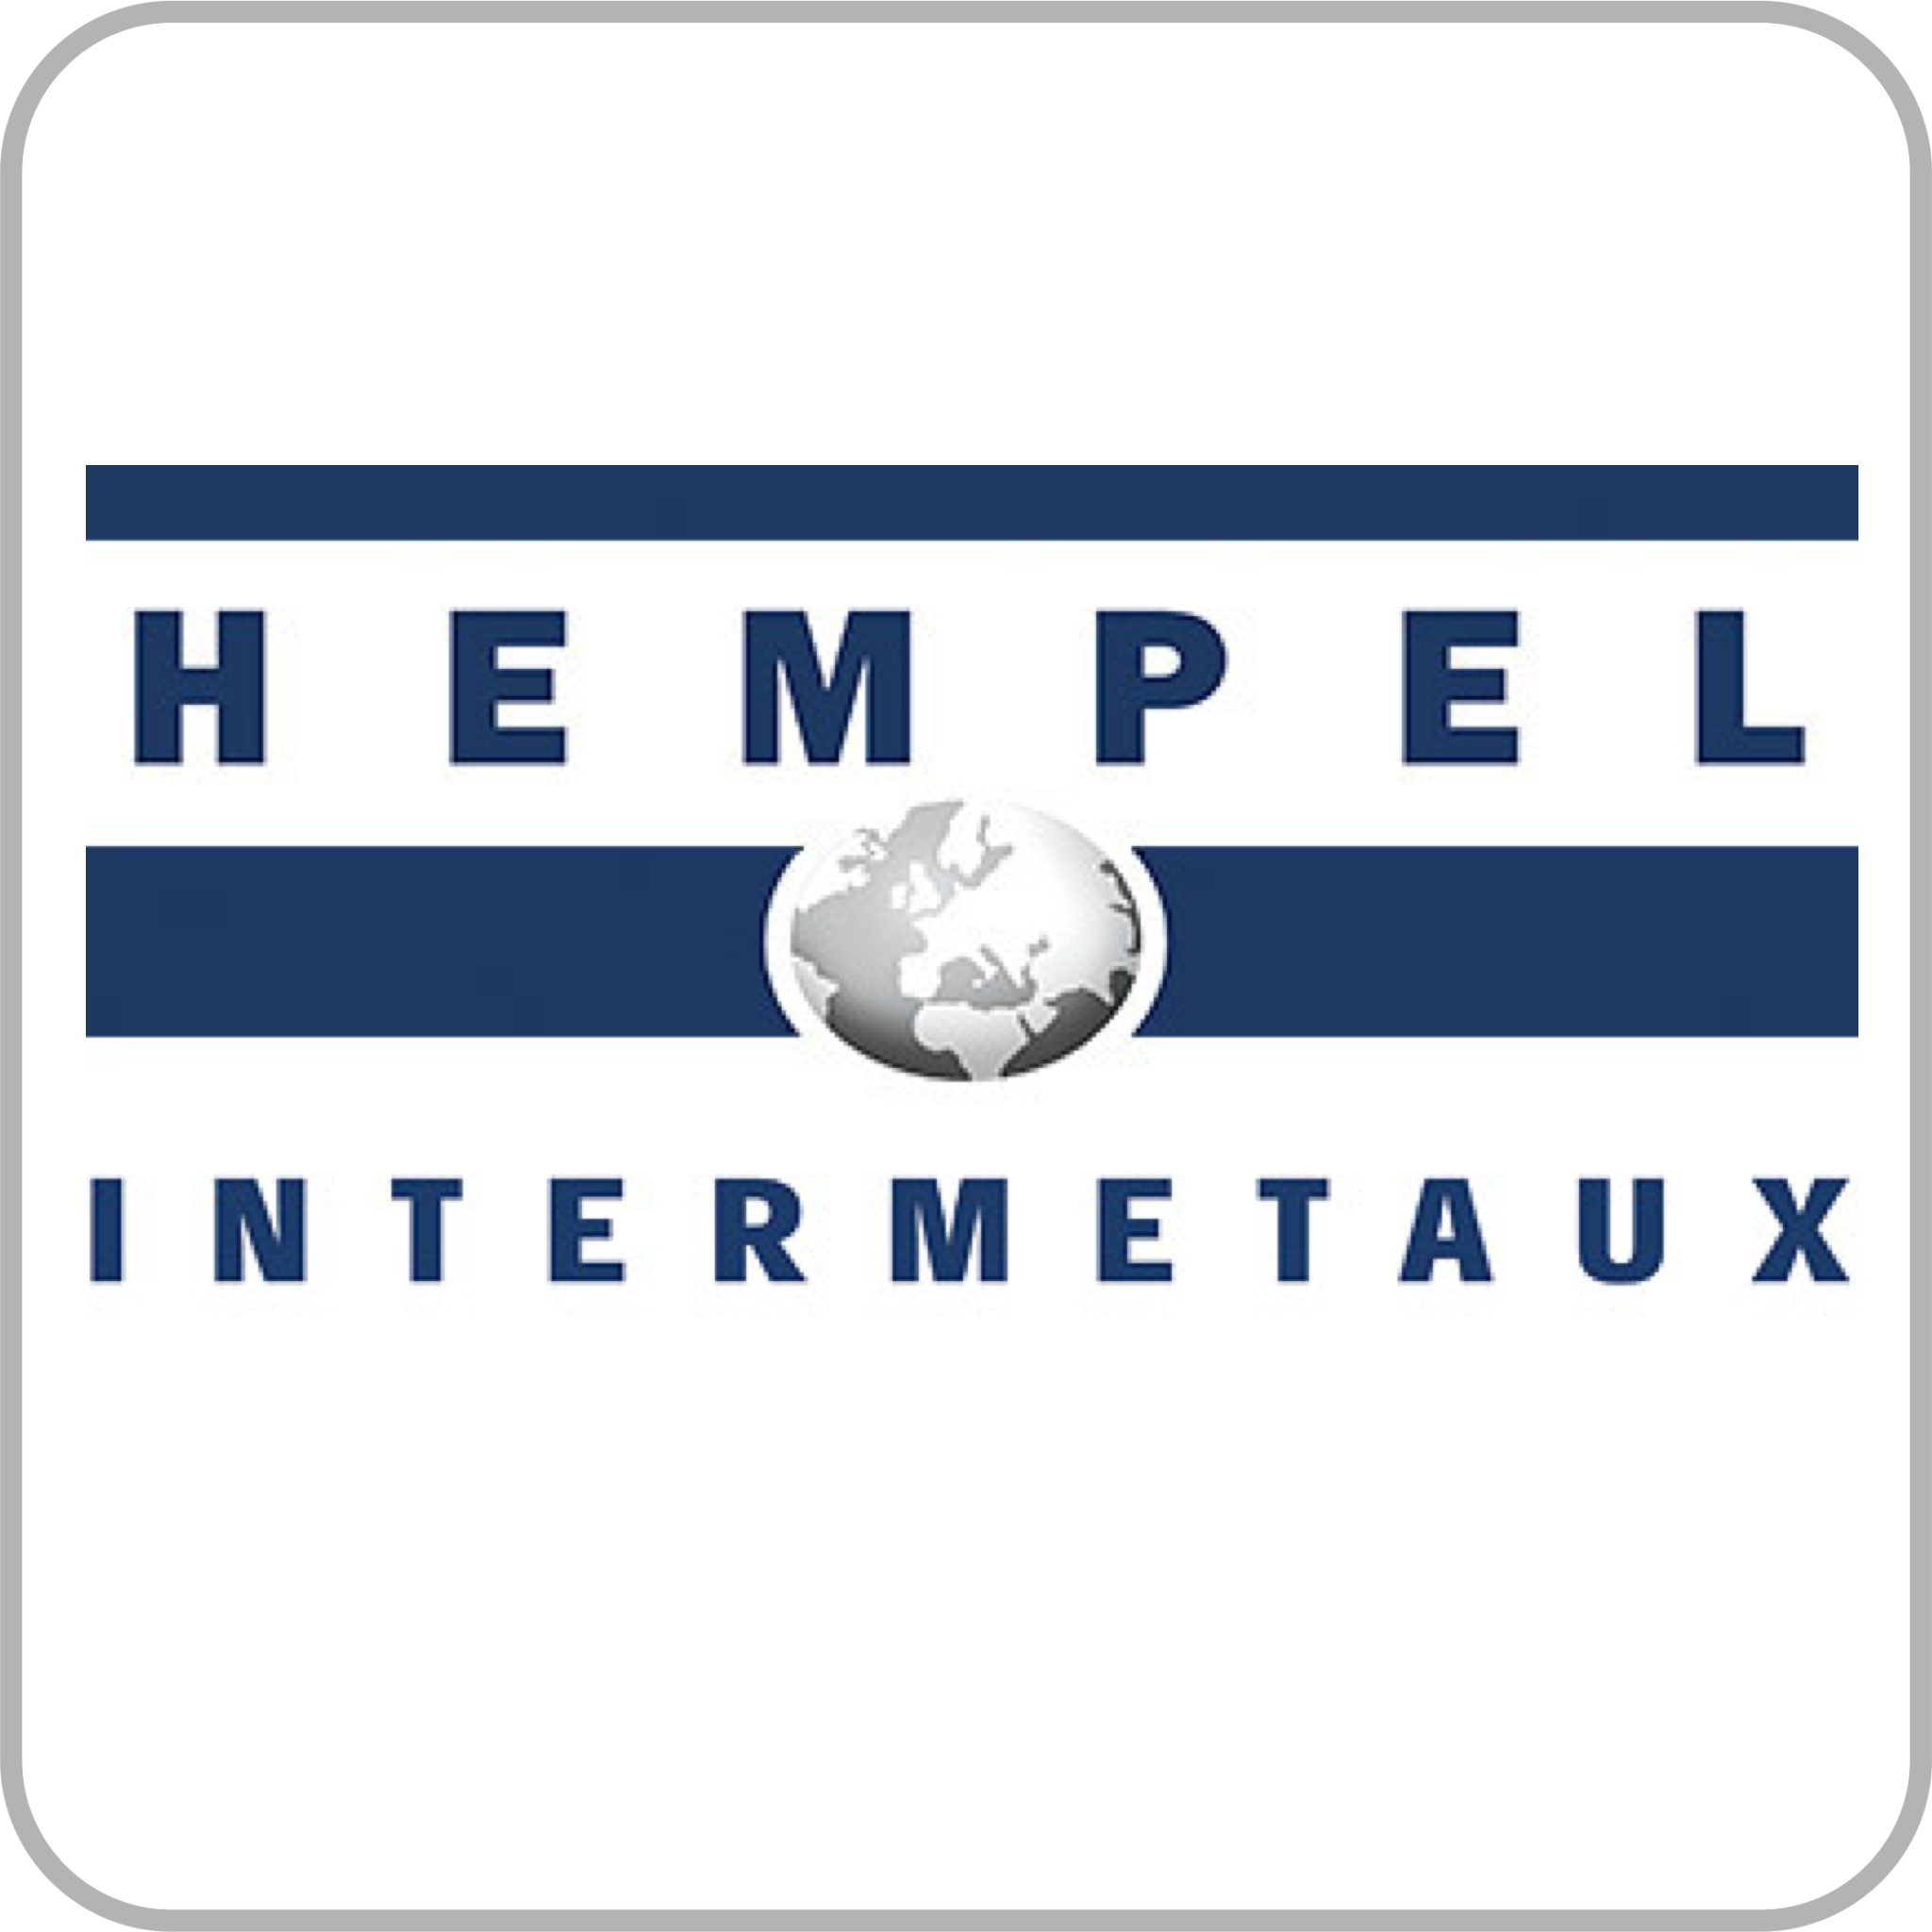 Hempel Intermetaux